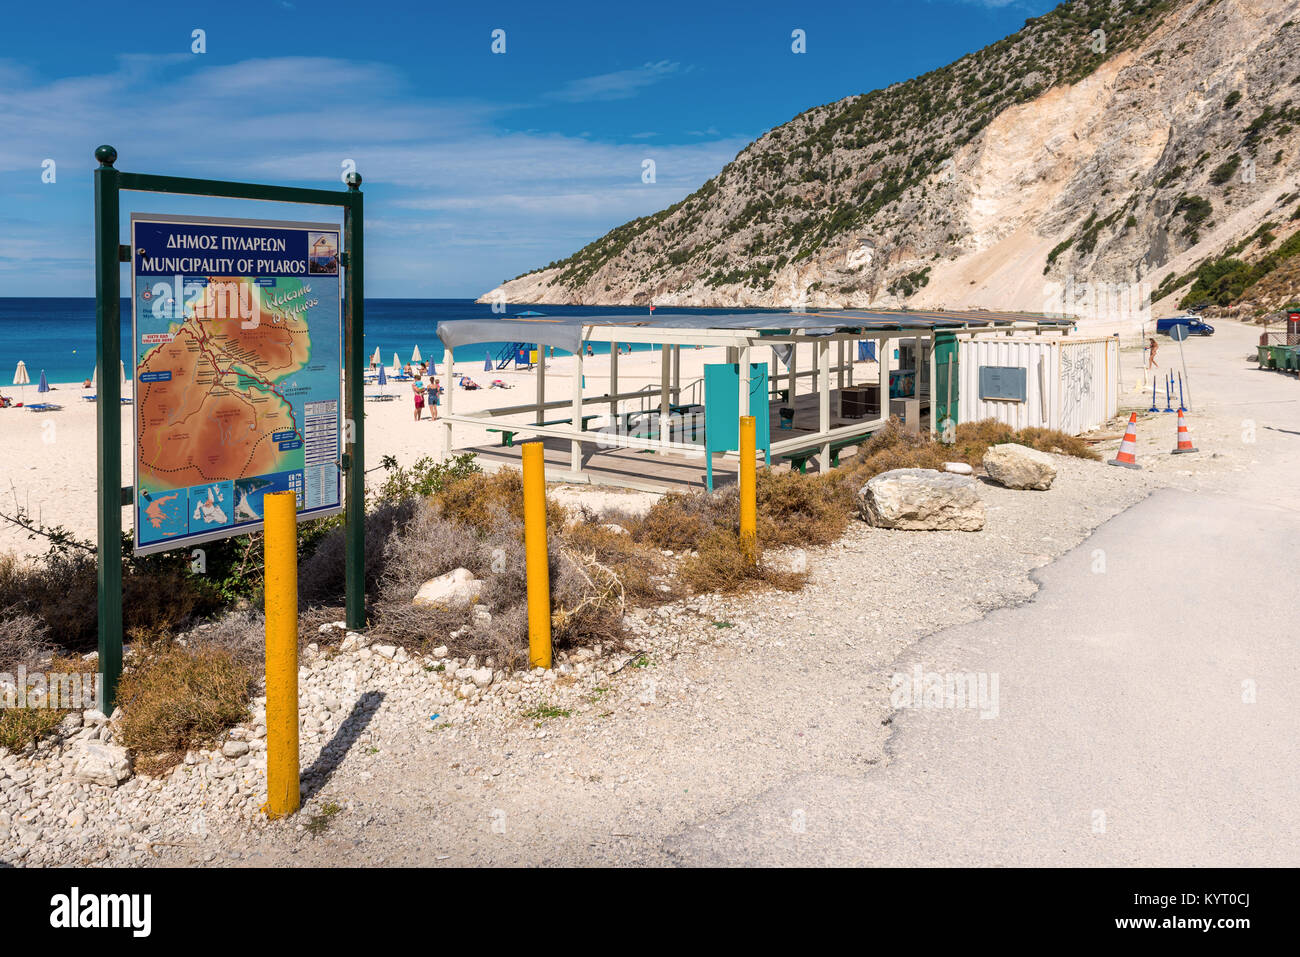 KEFALONIA, Griechenland - 30. September 2017: Kefalonia Insel Karte neben dem Strand Myrtos. Gemeinde von Pylaros. Griechenland. Stockfoto